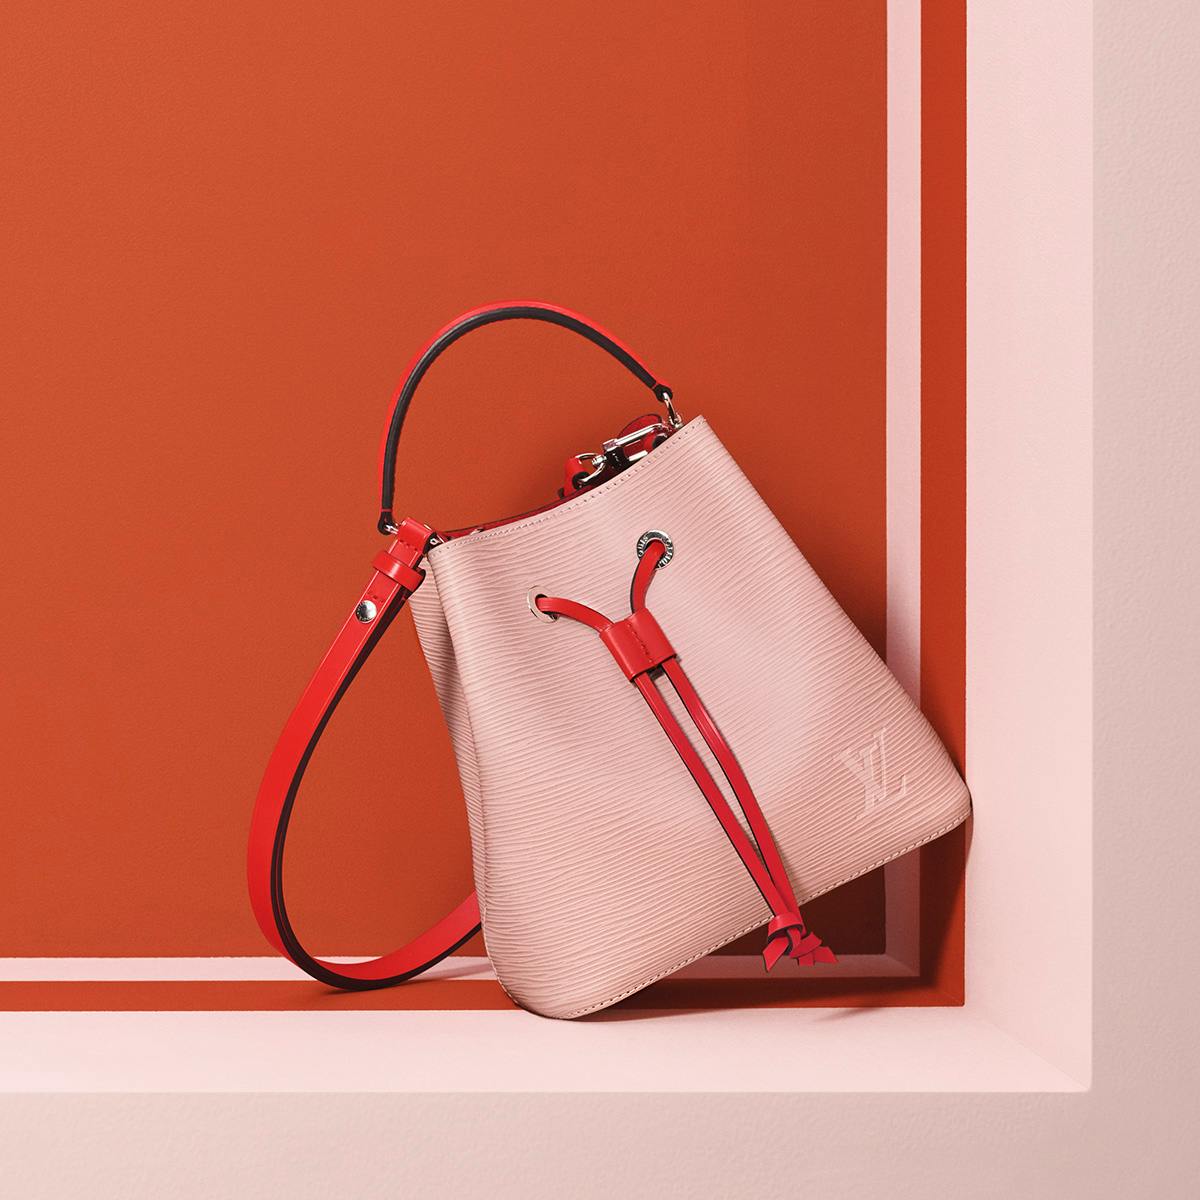 Louis Vuitton's NéoNoé Bag Now Comes in BB Size